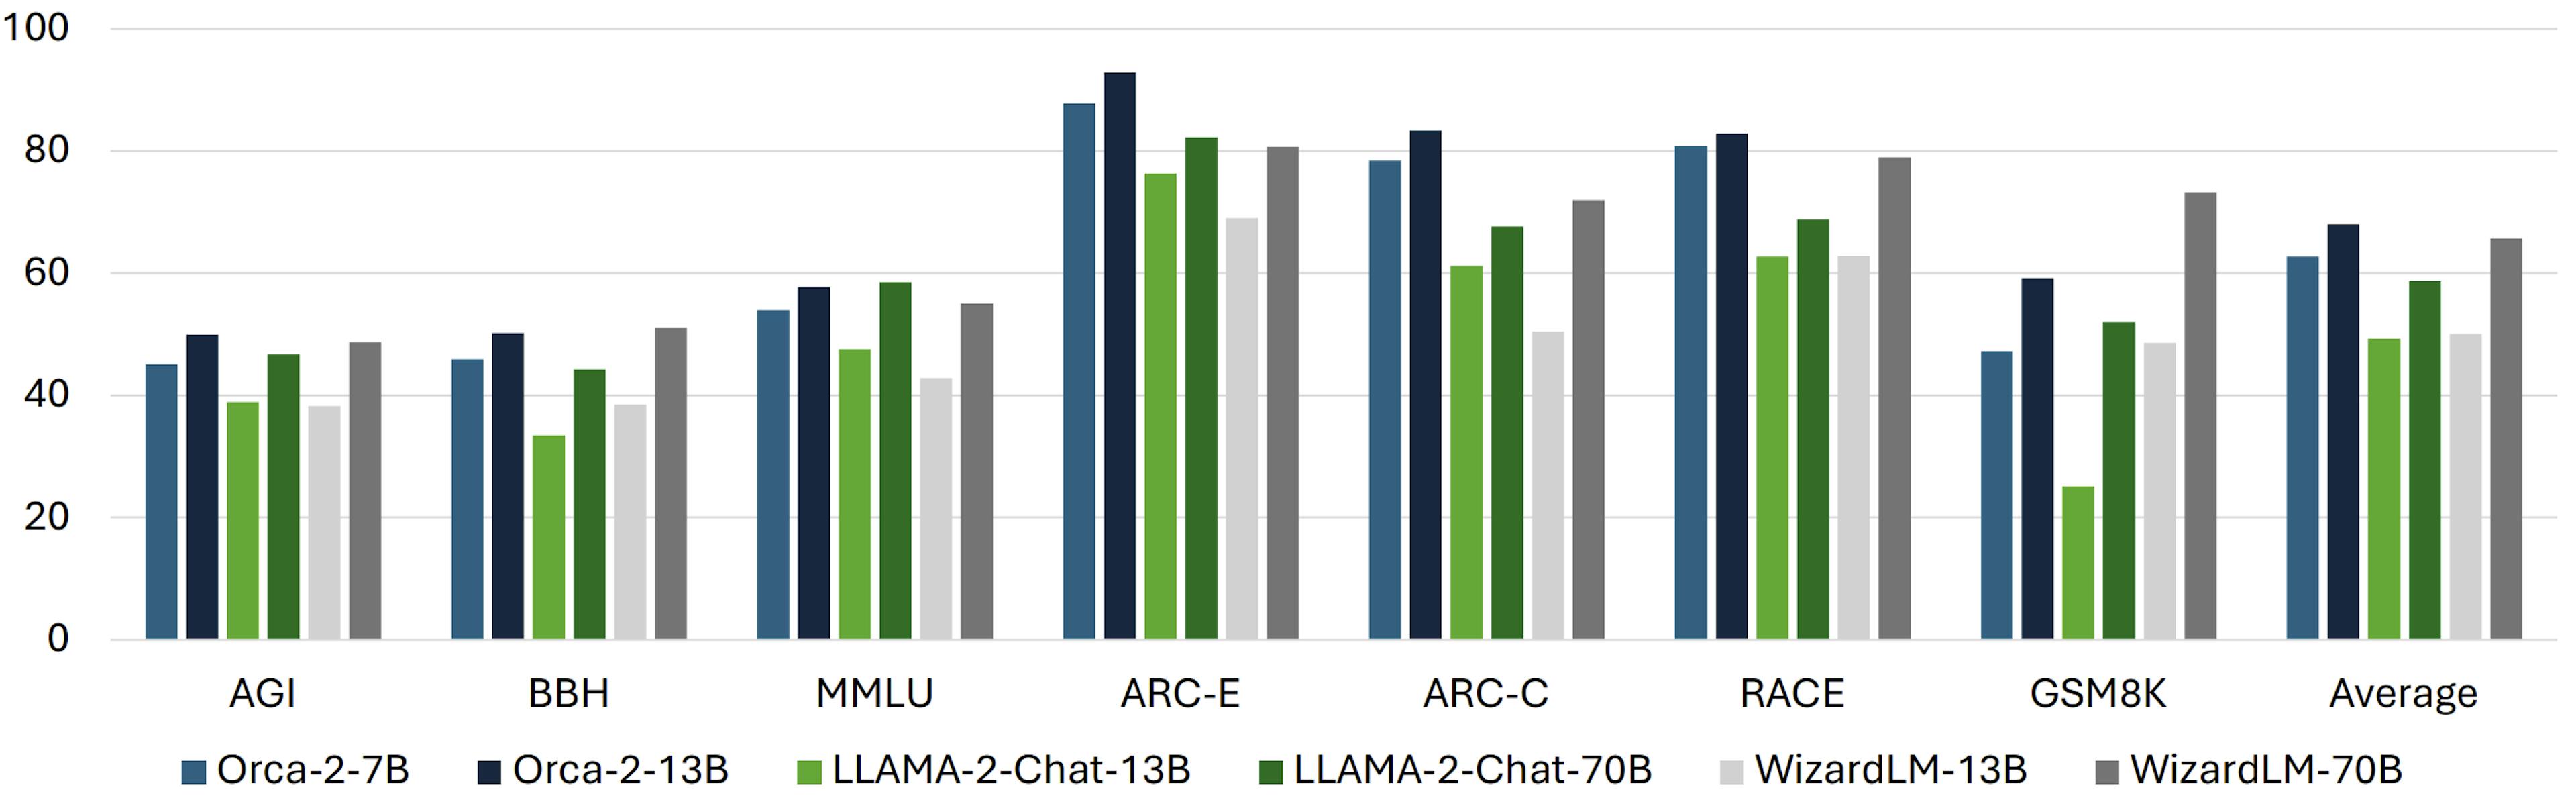 Kết quả so sánh Orca 2 (7B và 13B) với LLaMA-2-Chat (13B và 70B) và WizardLM (13B và 70B) trên nhiều điểm chuẩn (trong cài đặt không bắn) bao gồm hiểu ngôn ngữ, lý luận thông thường, nhiều bước lý luận, giải toán, v.v. - Orca 2: Dạy các mô hình ngôn ngữ nhỏ cách suy luận